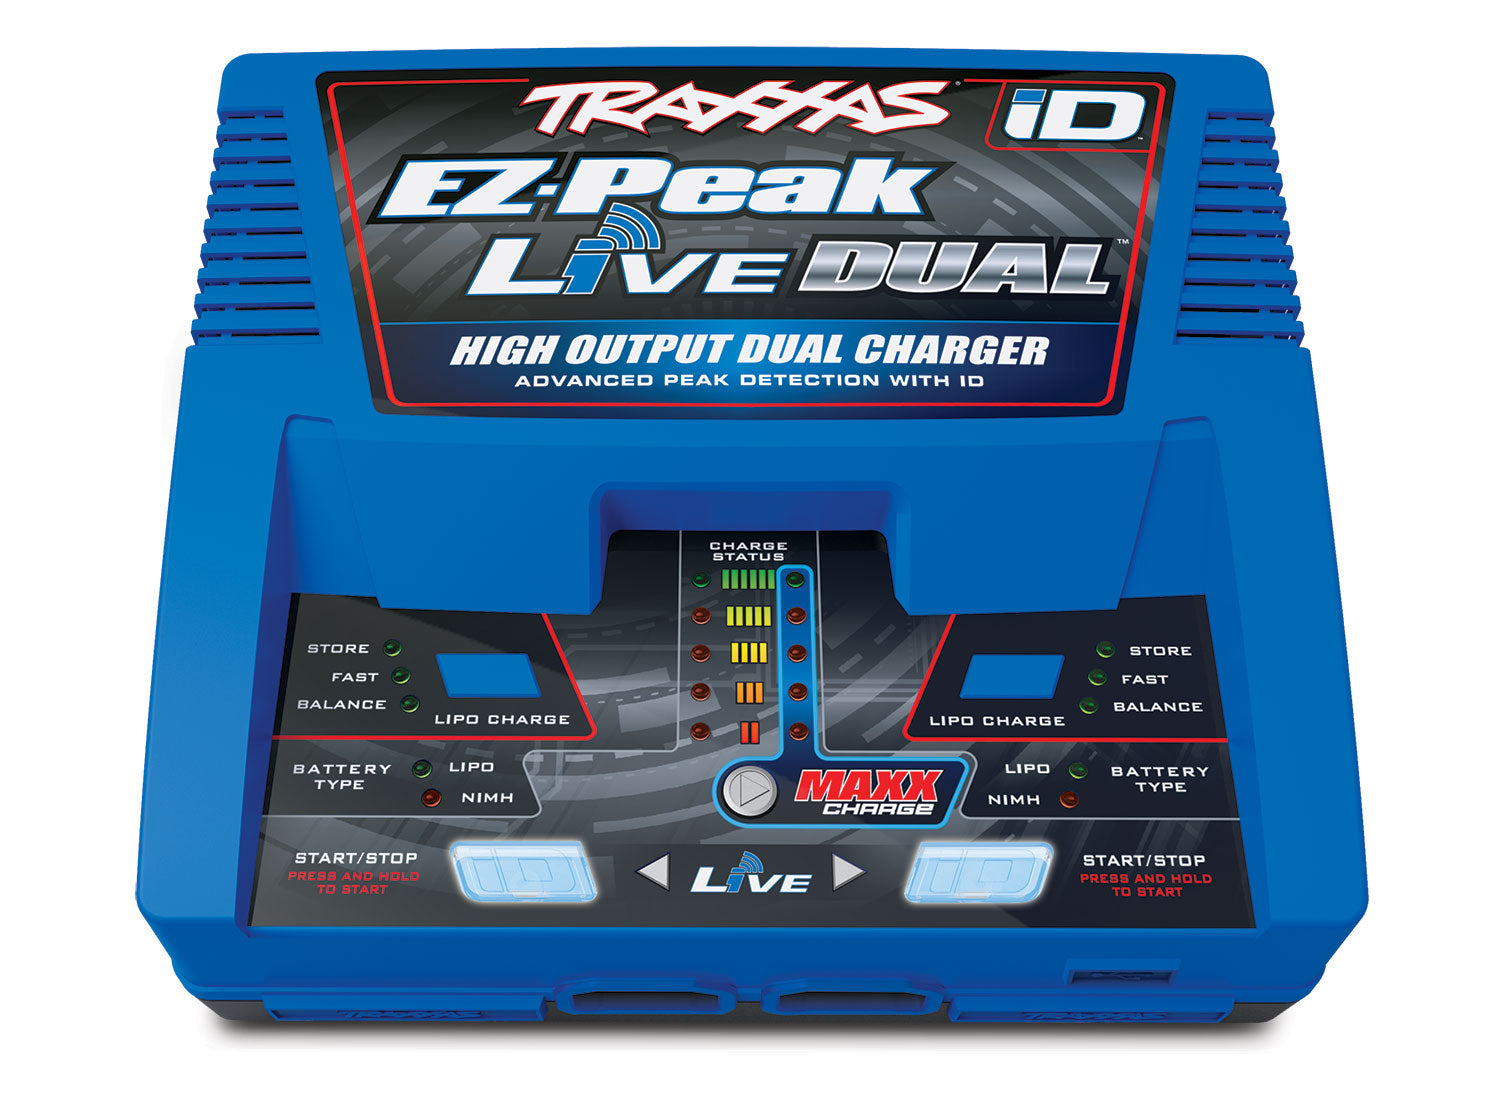 Traxxas EZ-PEAK Live Dual 4S Charger